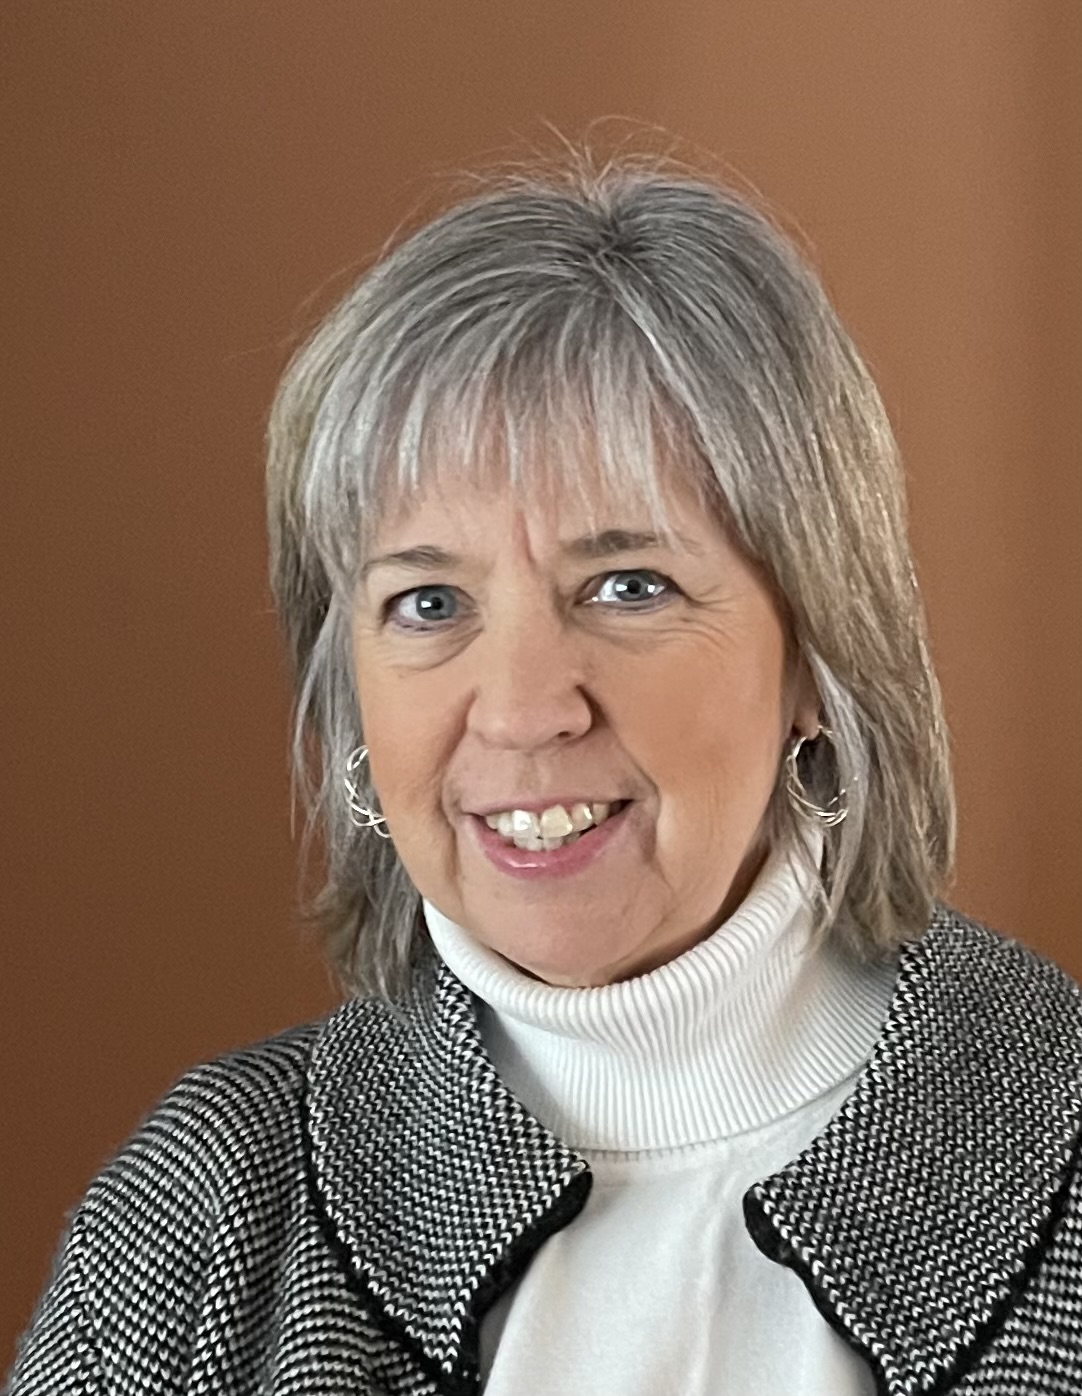 Dr. Lisa Phelan